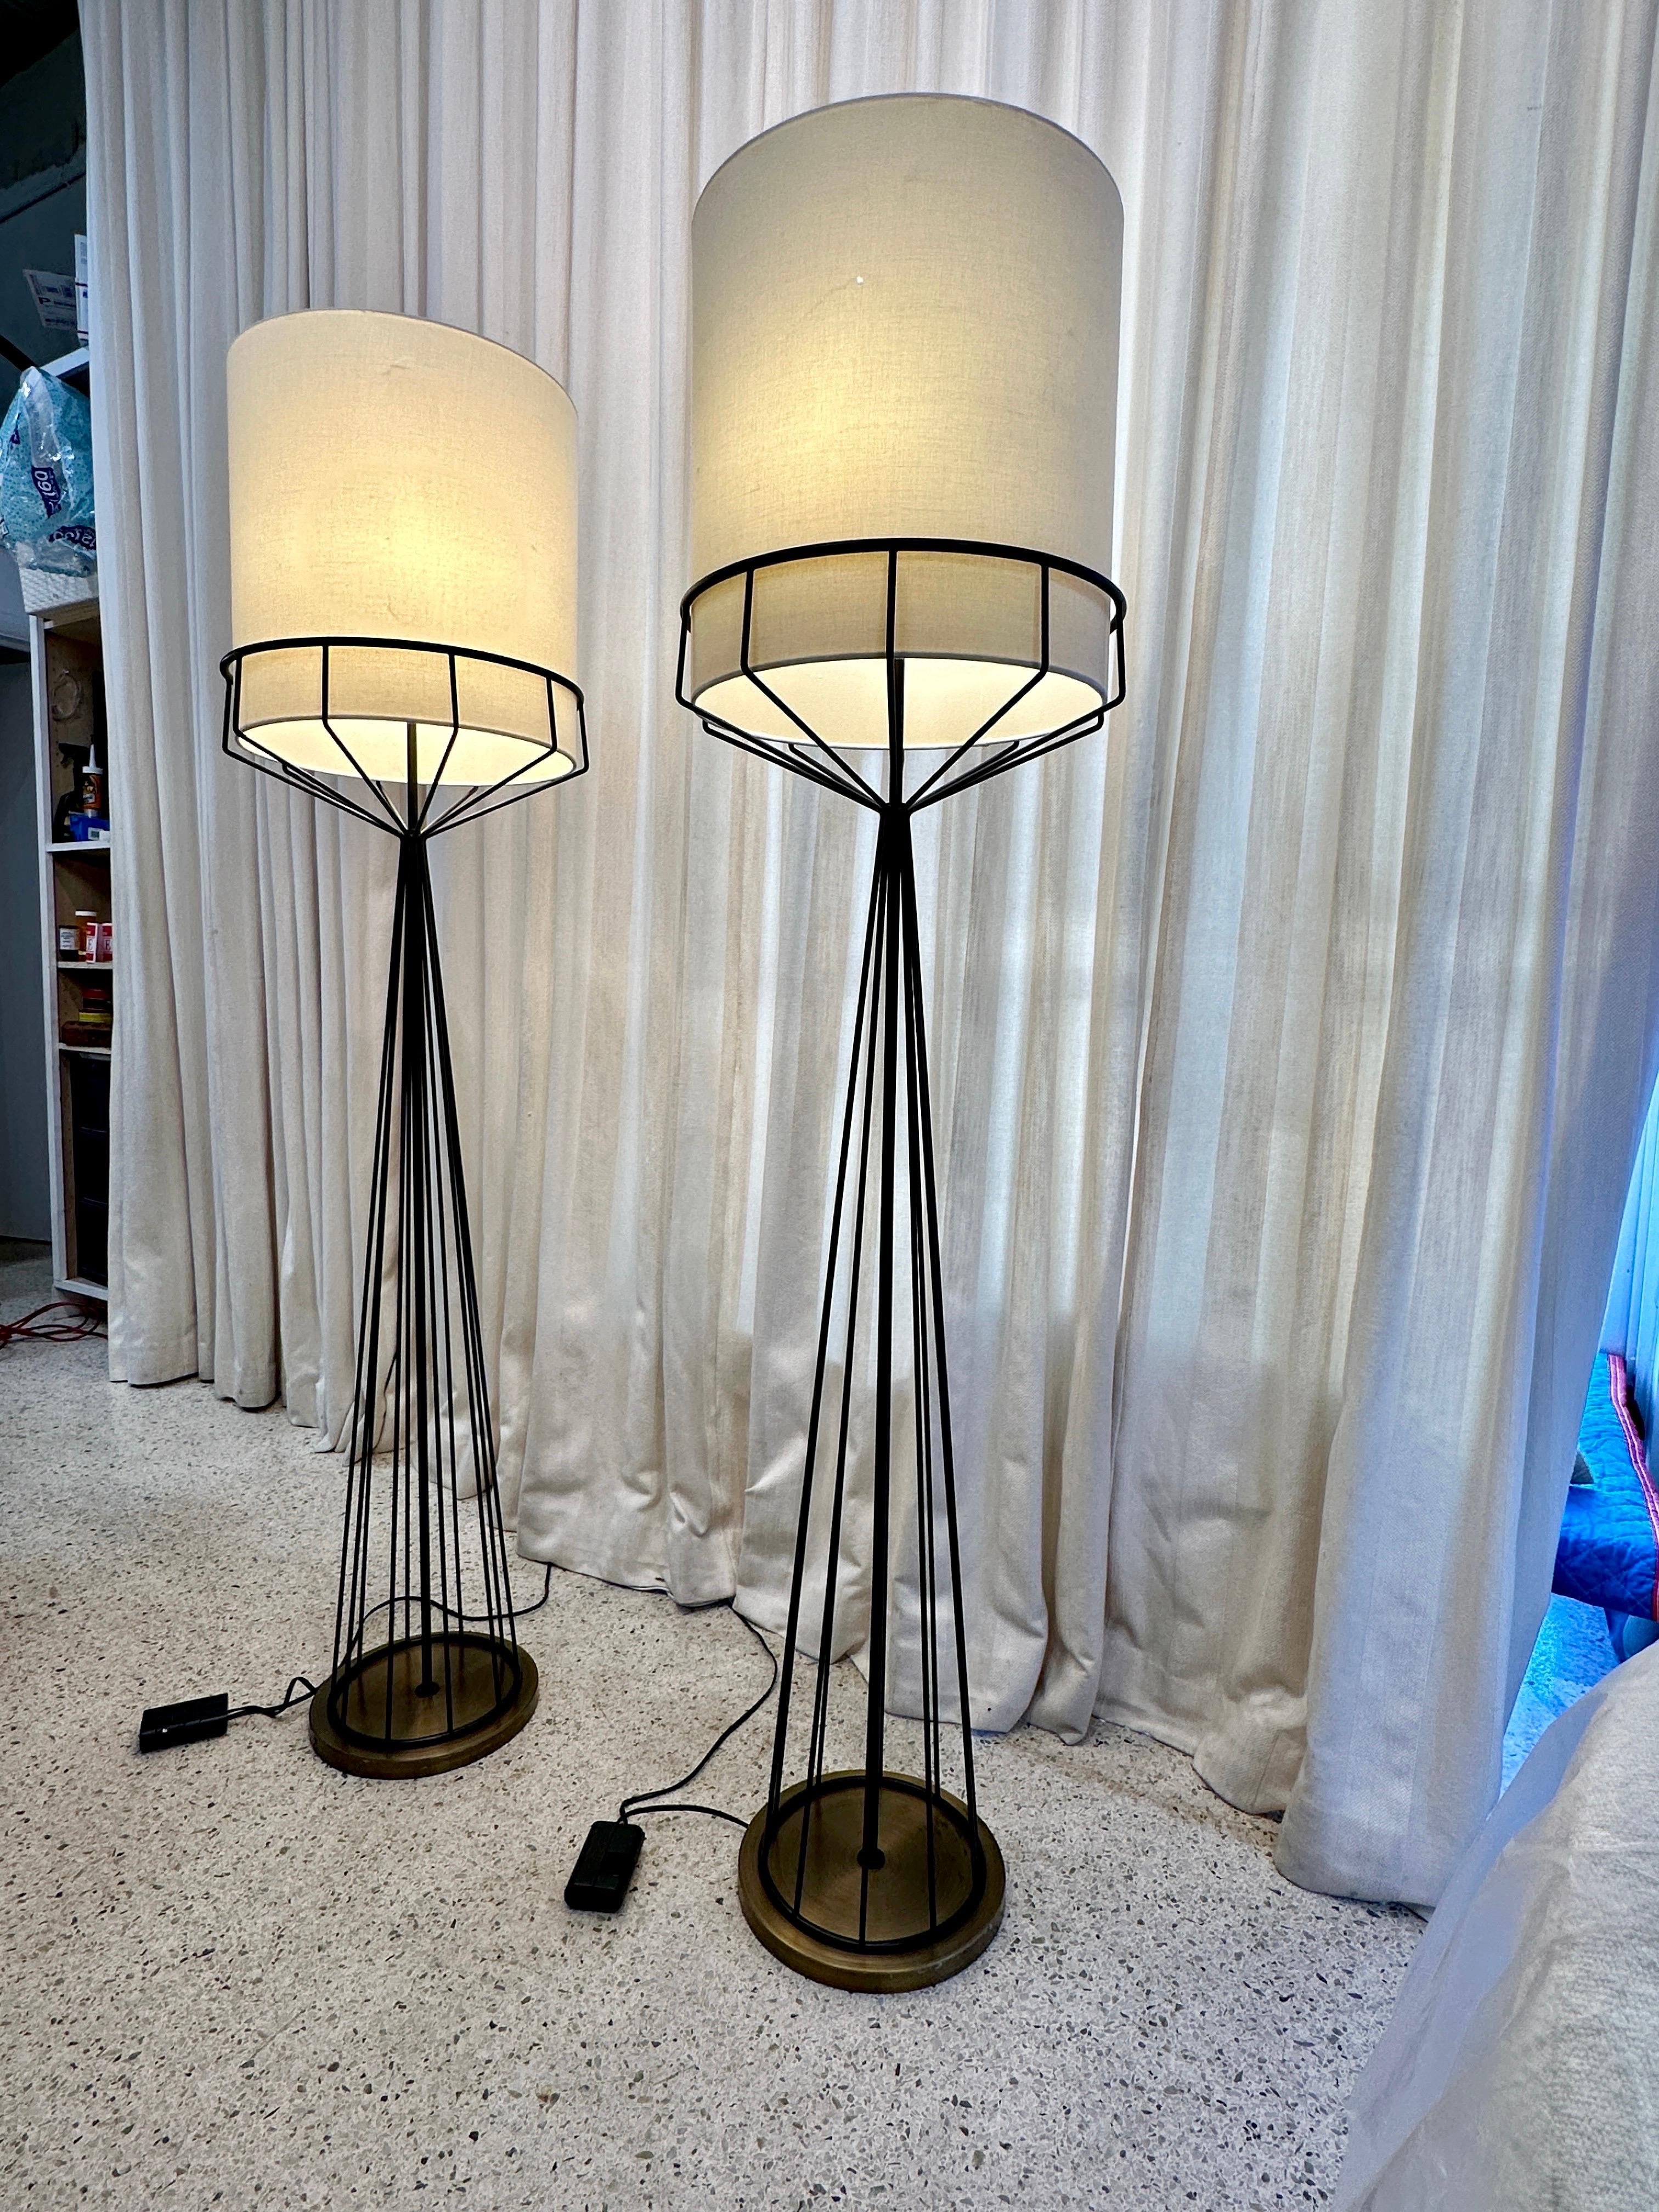 Cette jolie paire de lampadaires au design original de Tony Paul a été refaite sur mesure dans les années 90 pour un important hôtel de Miami par HB Architectural Lighting à New York. Fabriqués à 100 % aux États-Unis, ils sont d'une qualité